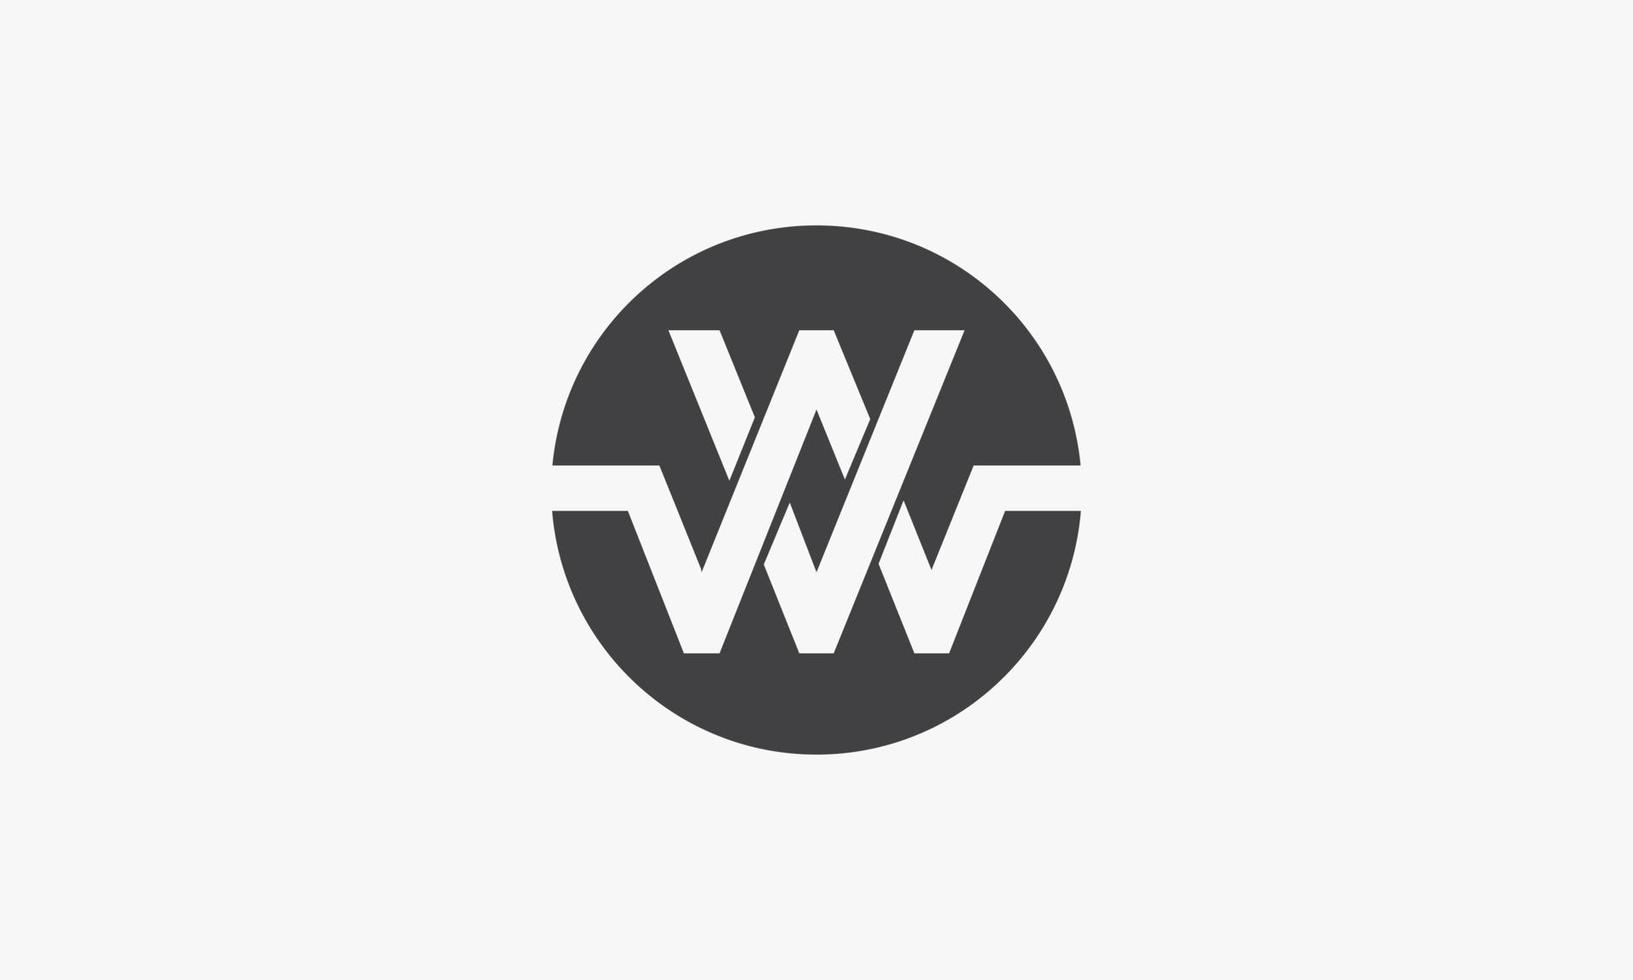 concetto di logo cerchio vw o wv isolato su priorità bassa bianca. vettore